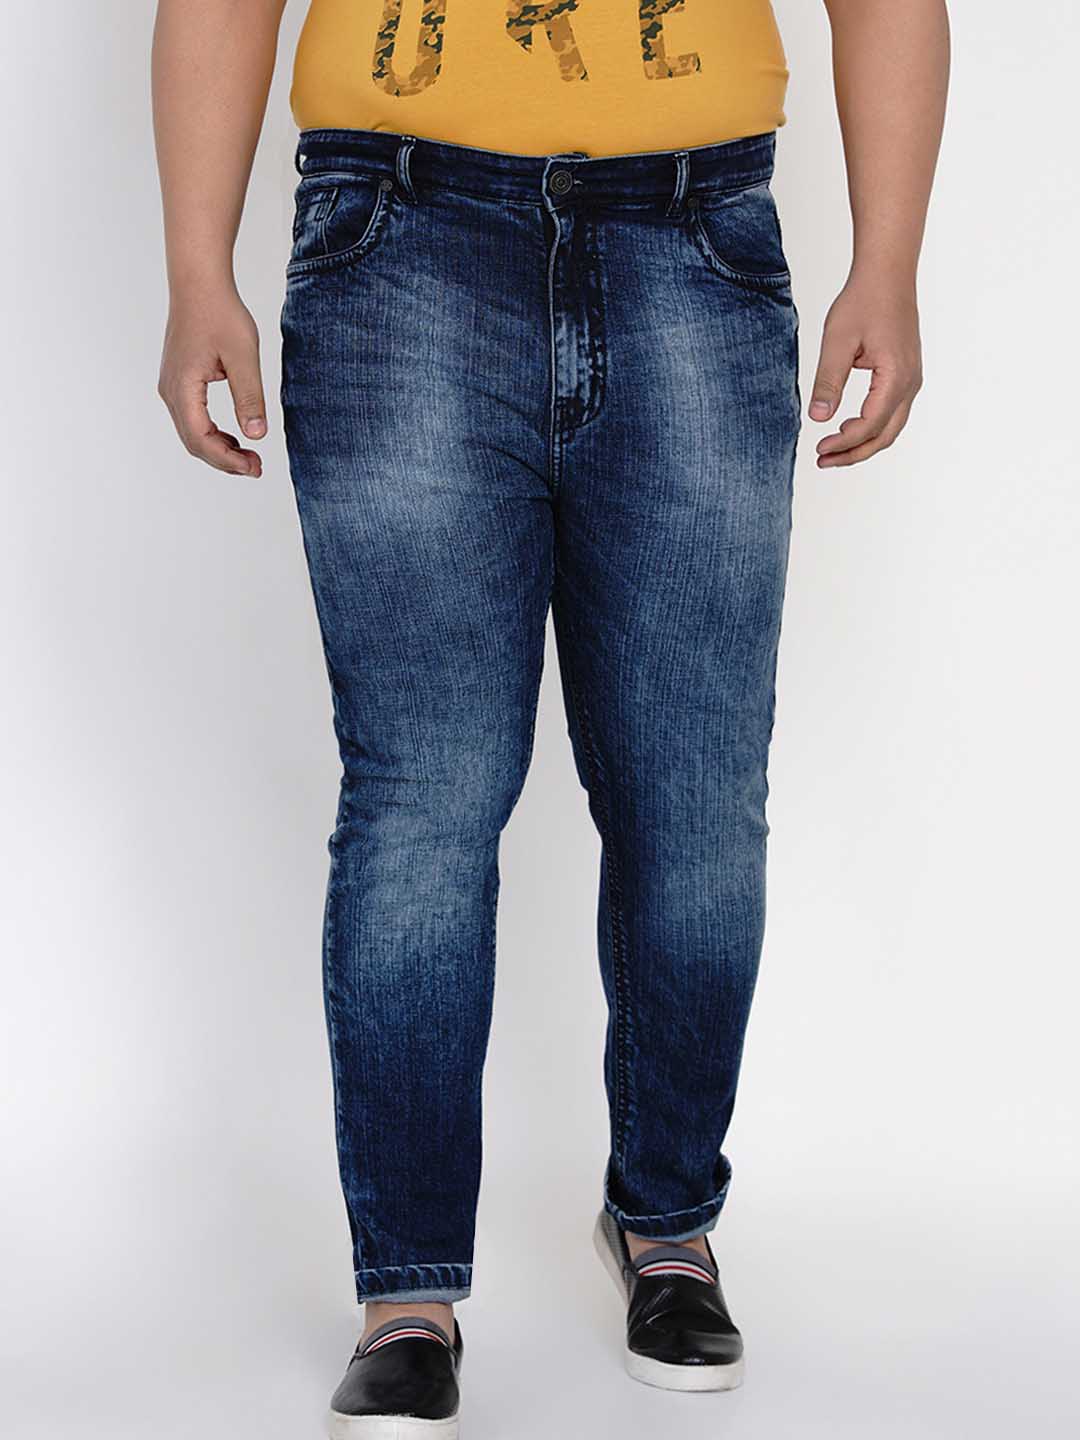 bottomwear/jeans/JPJ12121/jpj12121-1.jpg